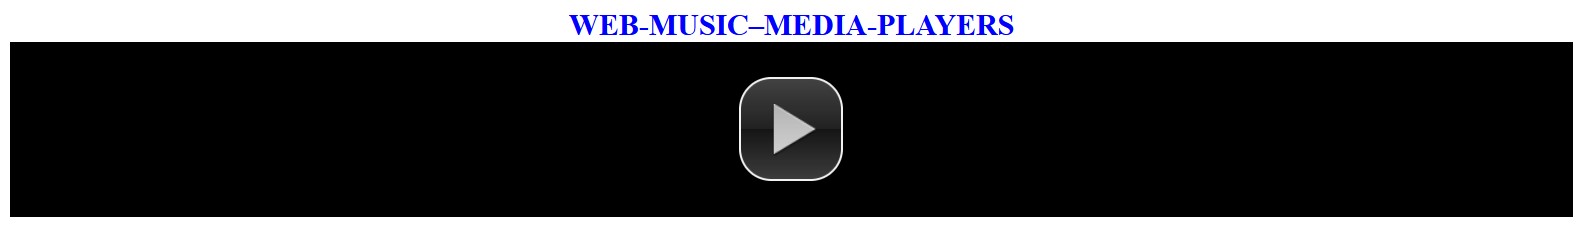 WEB–MUSIC–MEDIAS-PLAYERS-4